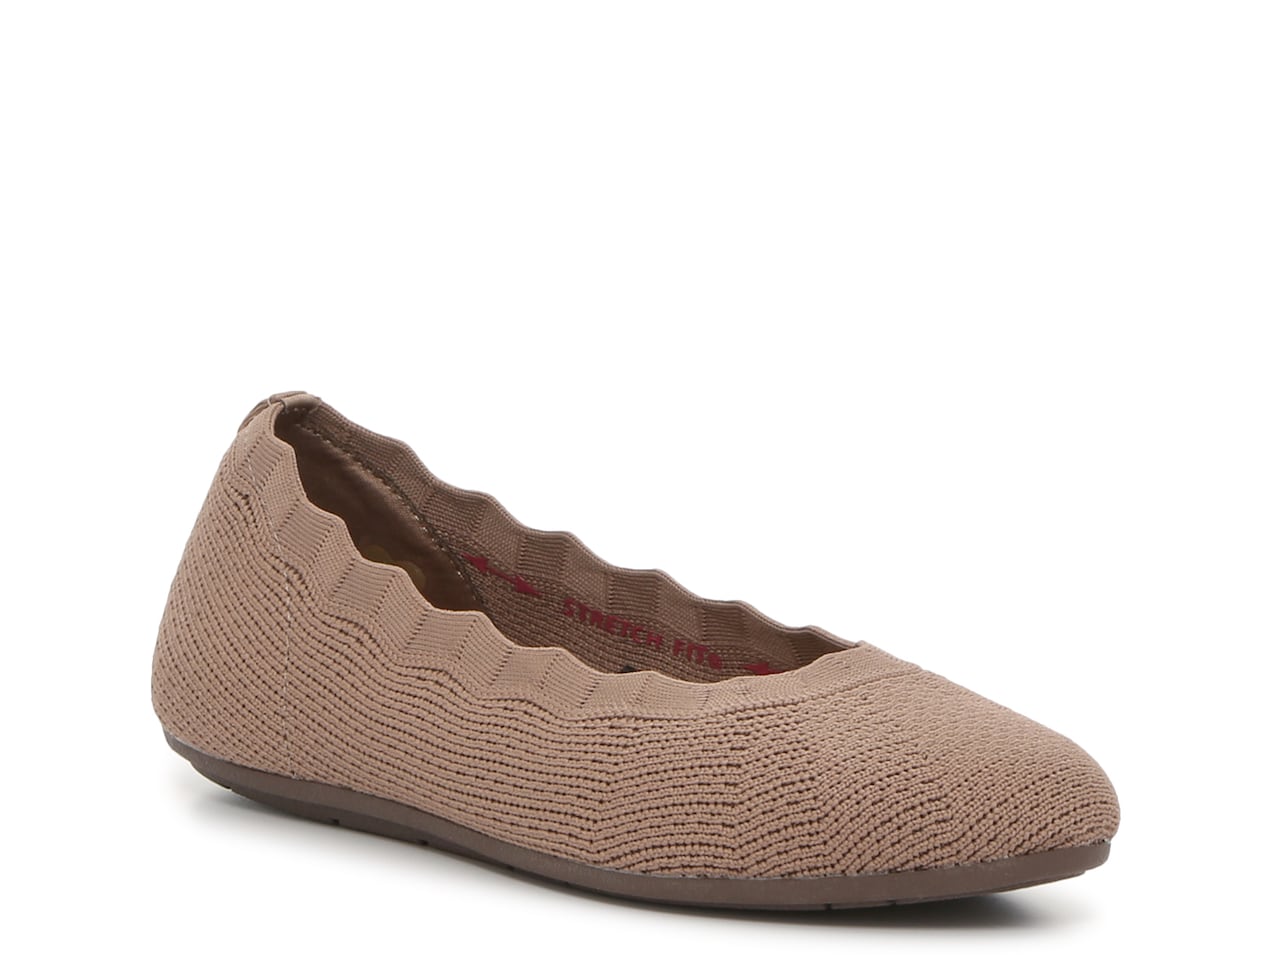 Skechers Women's Cleo 2.0 Love Spell Flat Shoes (Mocha Knit) $28.78 + Free Shipping